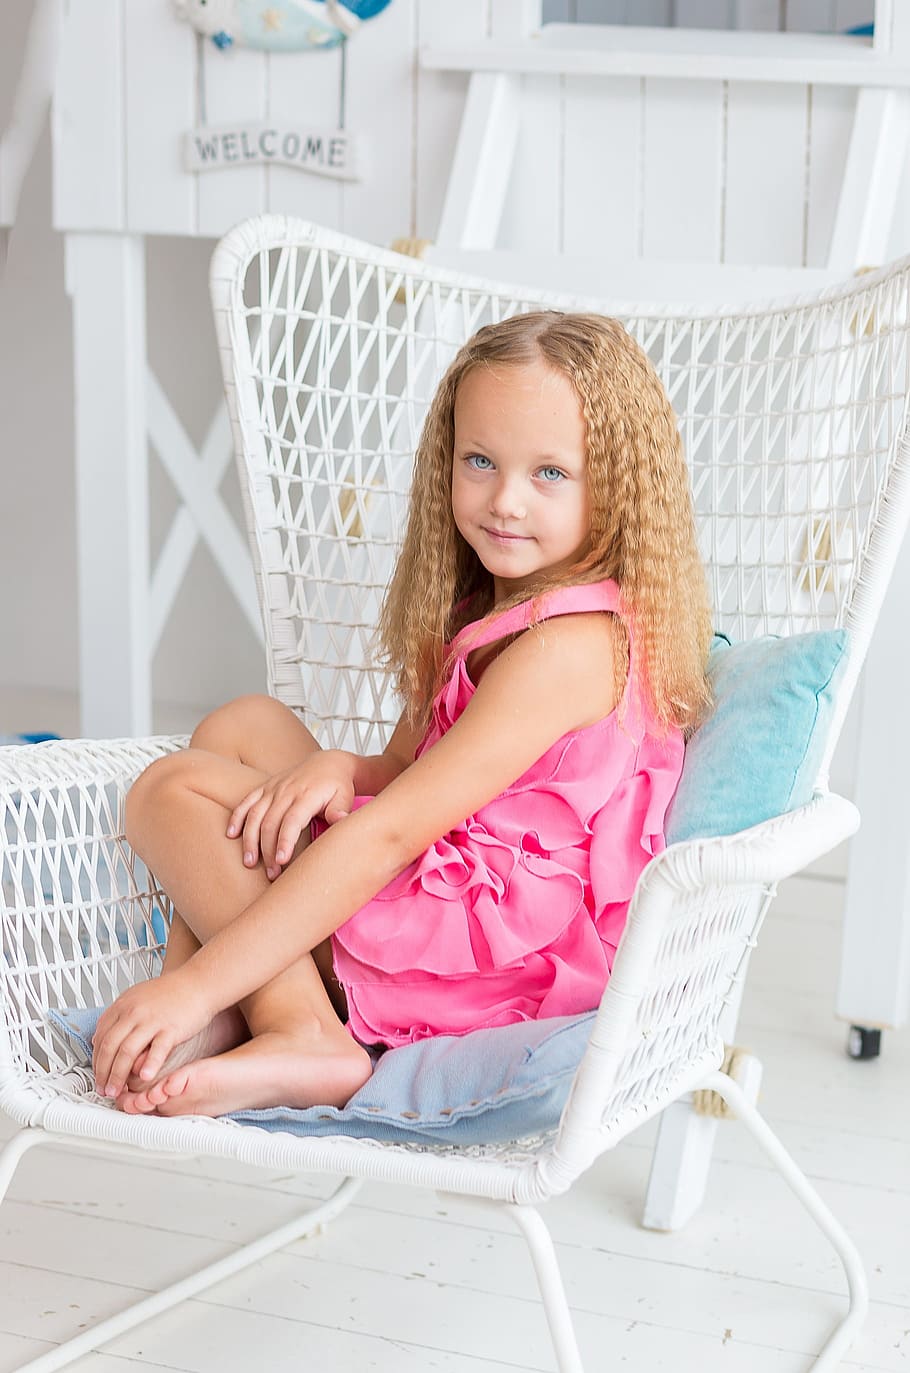 소녀, 담홍색, 민소매 드레스, 좌석, 화이트, 위커 안락 의자, 어린, 파란 눈, 눈, 보기